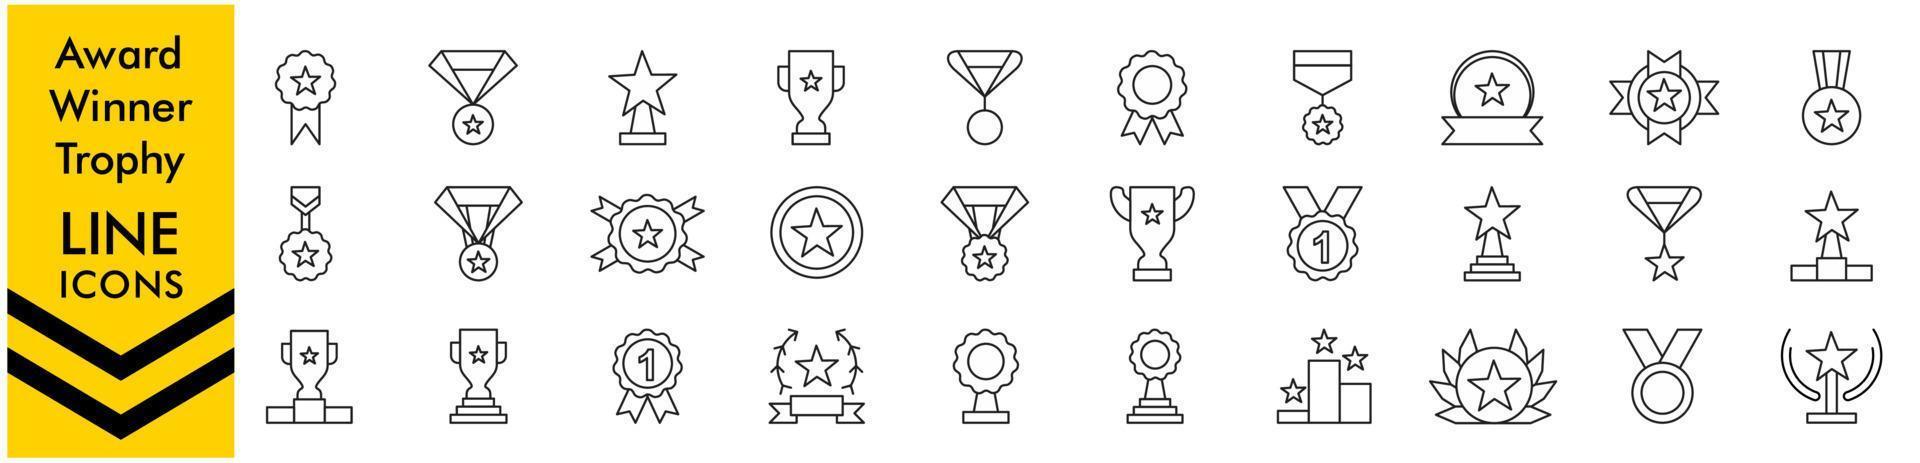 iconos de línea de premios. colección de iconos de línea de premios copa de trofeo, medalla, ganador, premio, icono de premio. vector